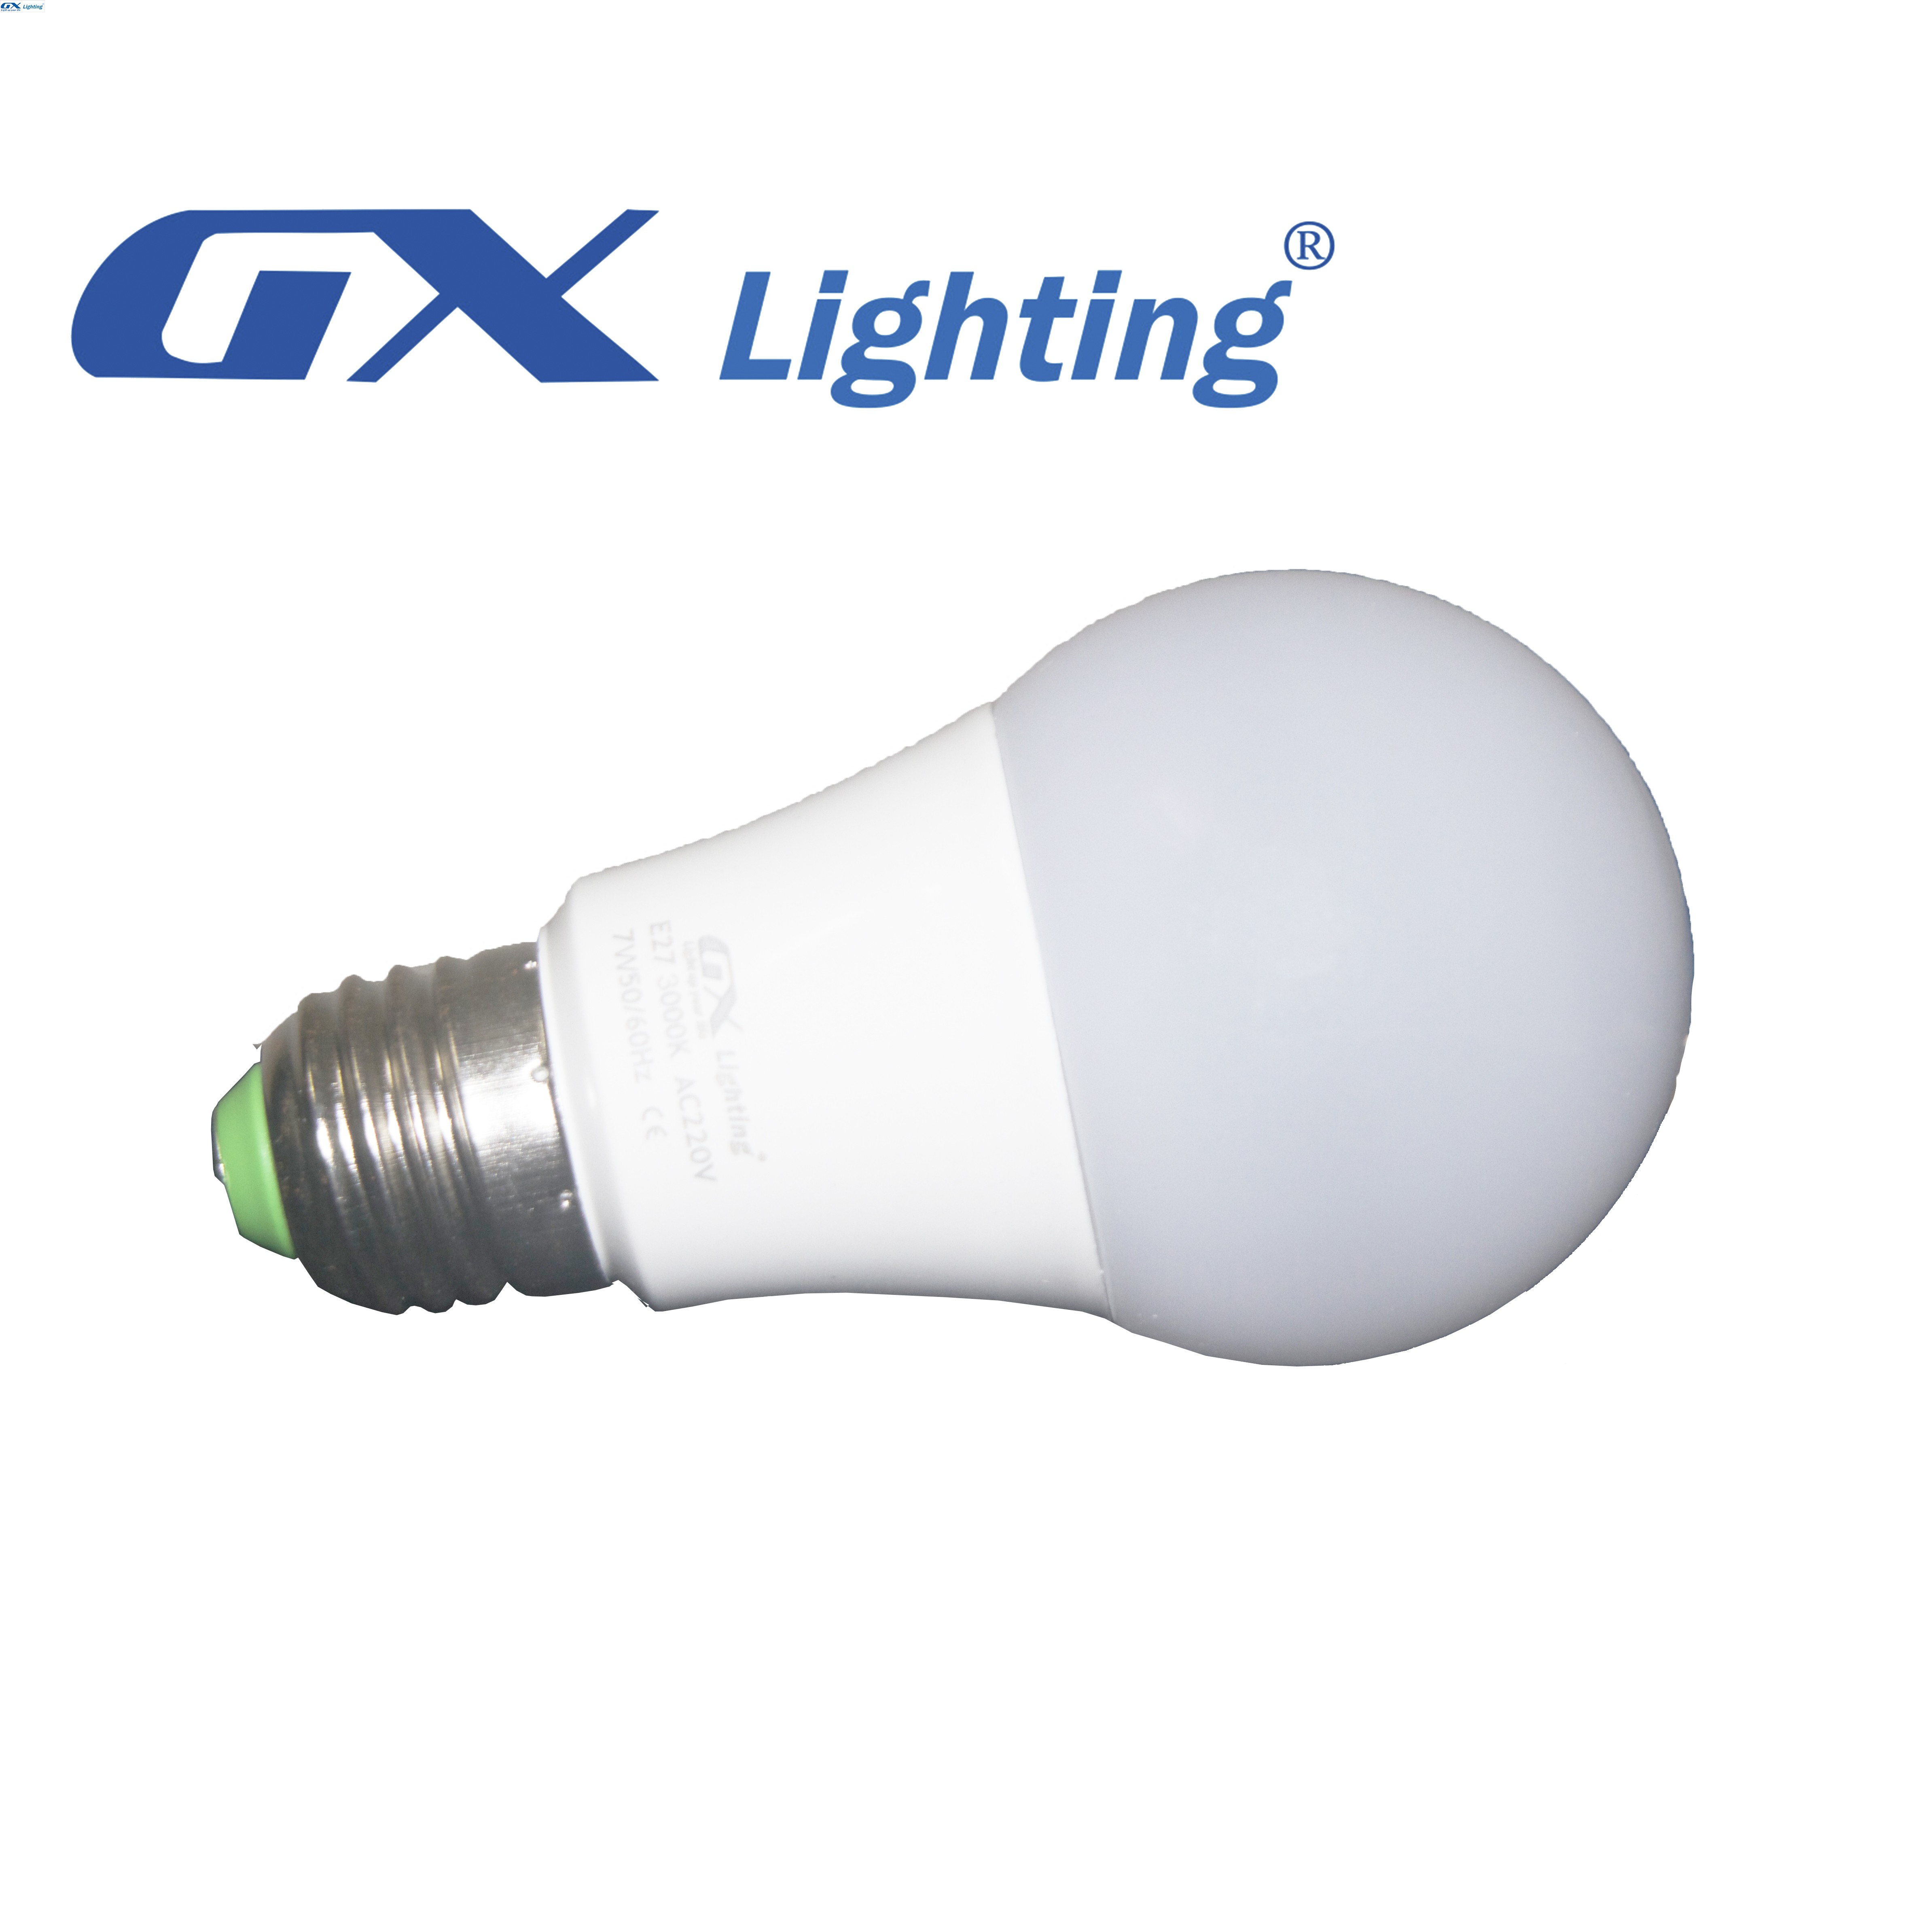 Đèn Led Bóng Tròn GX Lighting 7W QP-704